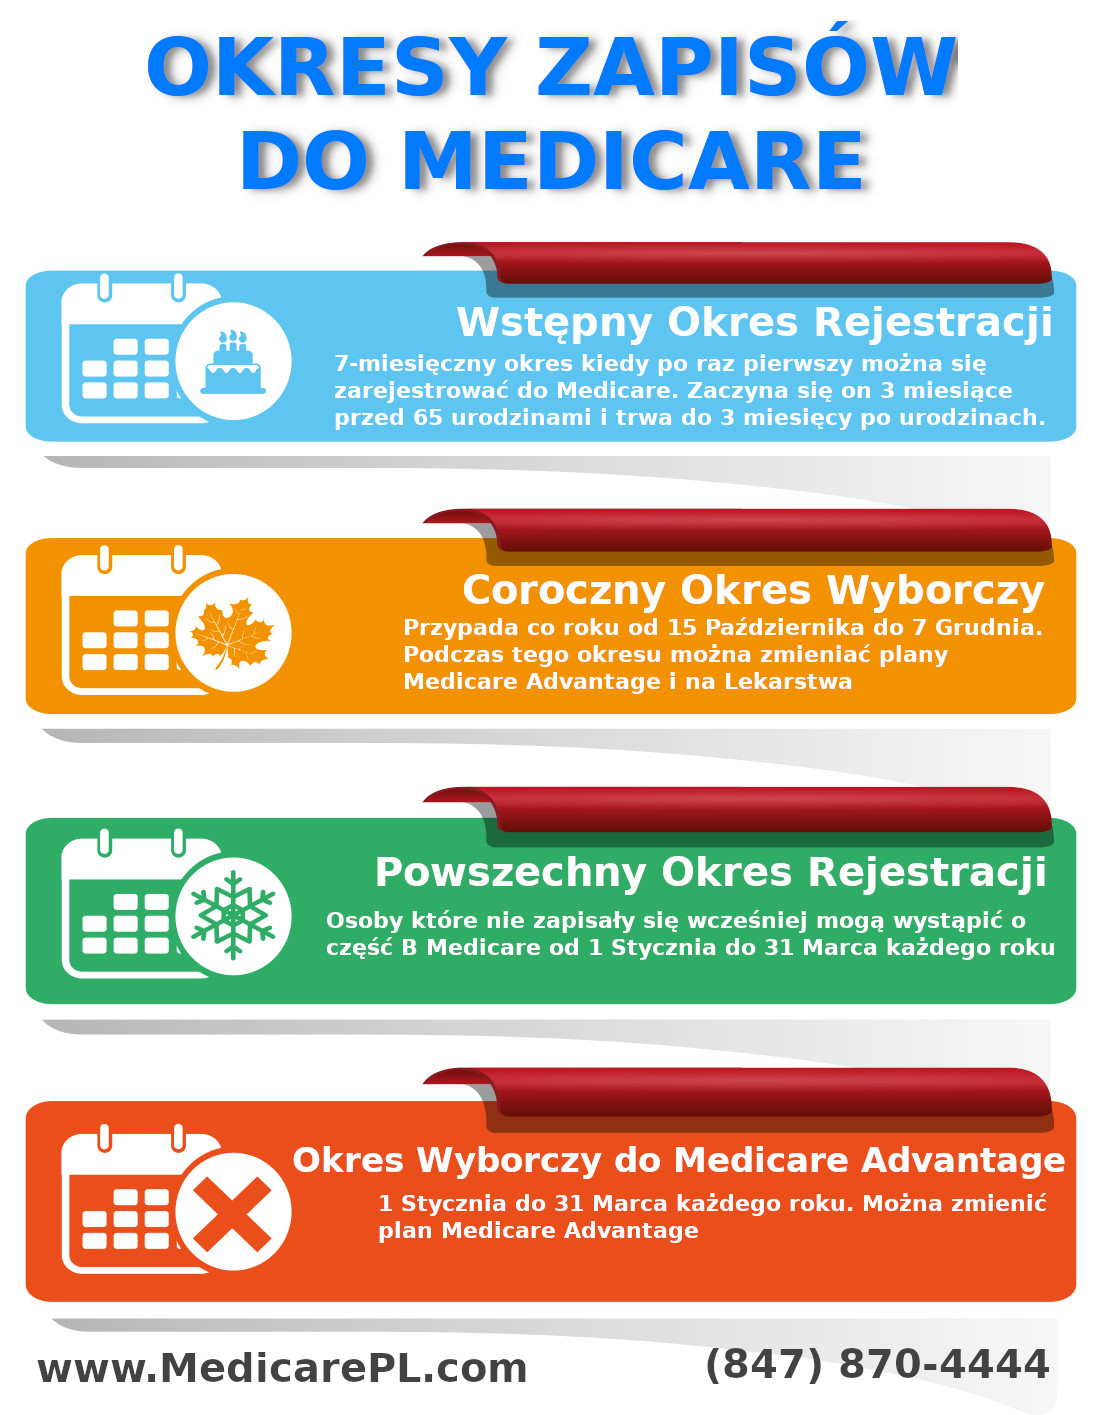 Okresy zapisowe do Medicare po Polsku